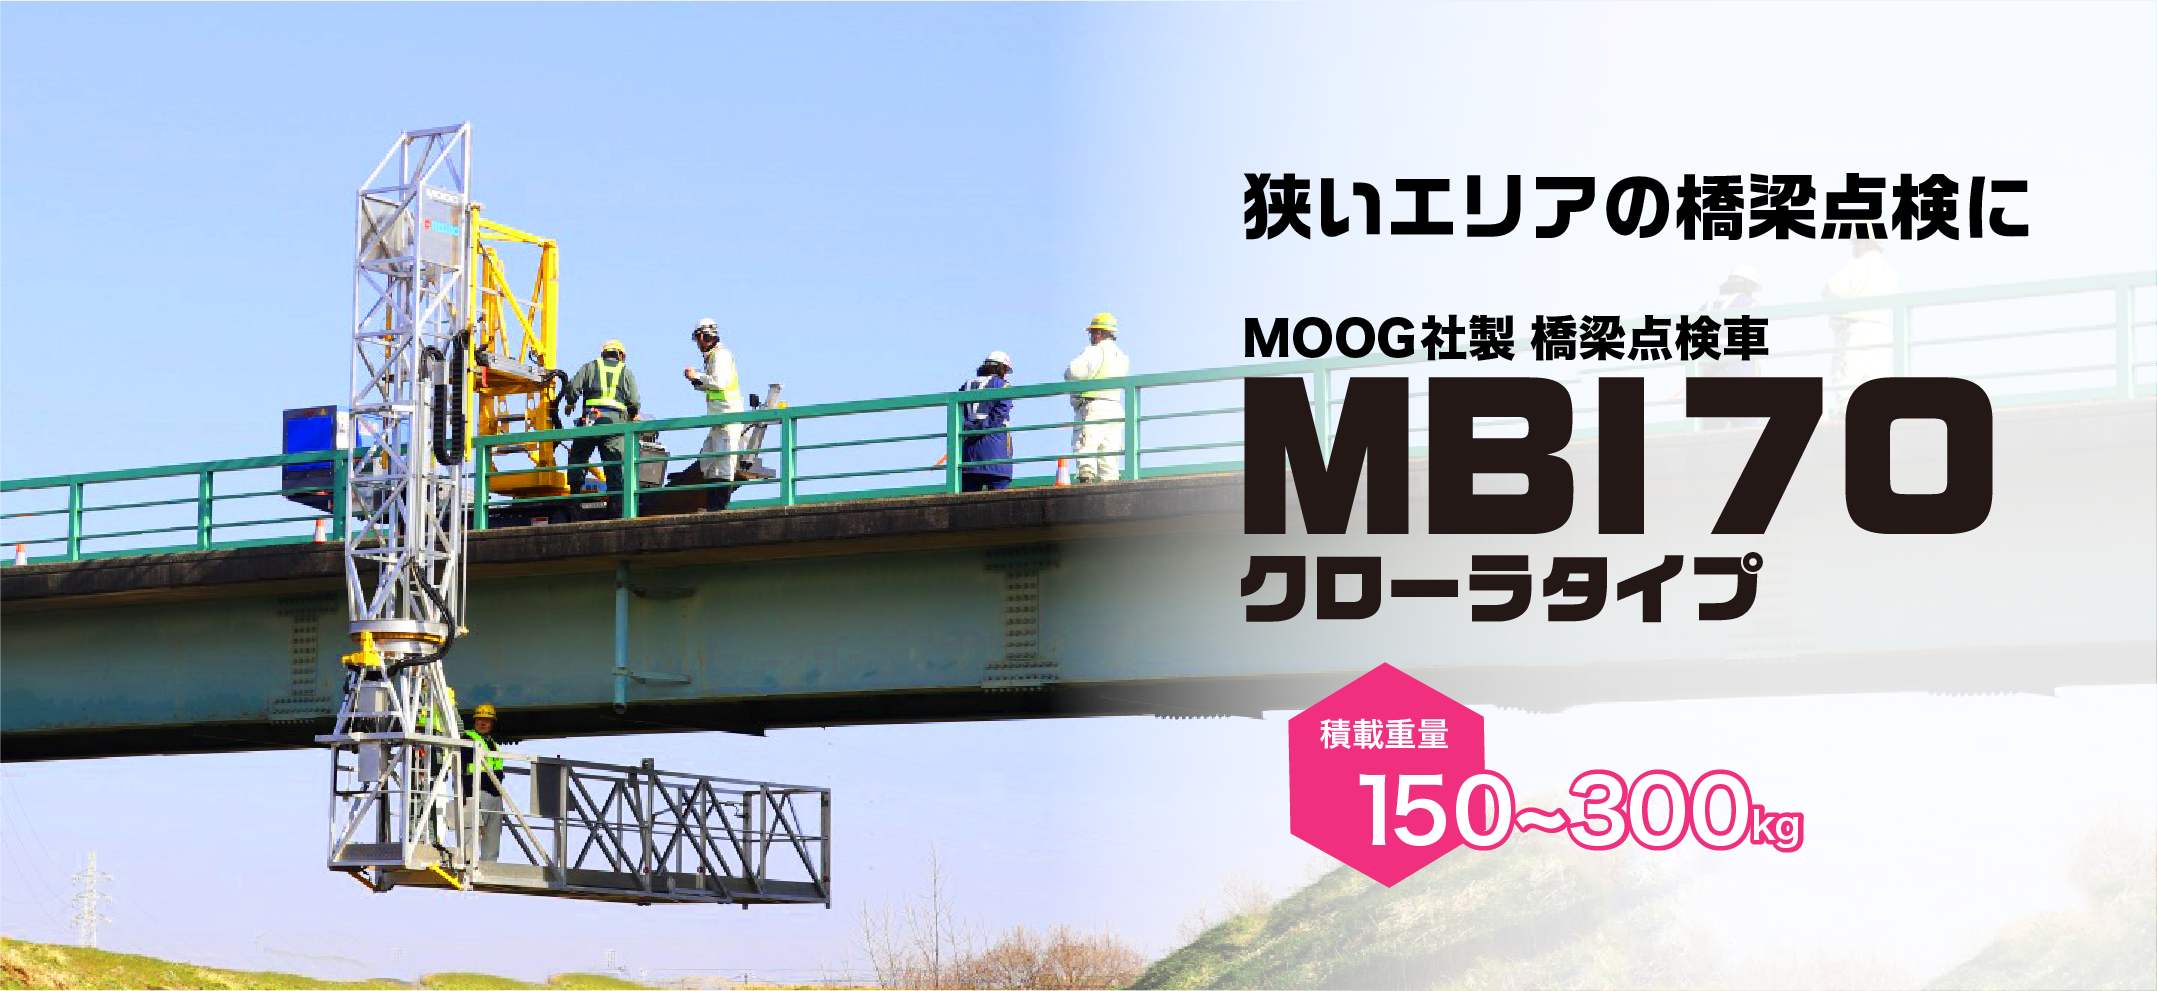 クローラ式橋梁点検機MBI70[MOOG社製]メインビジュアル